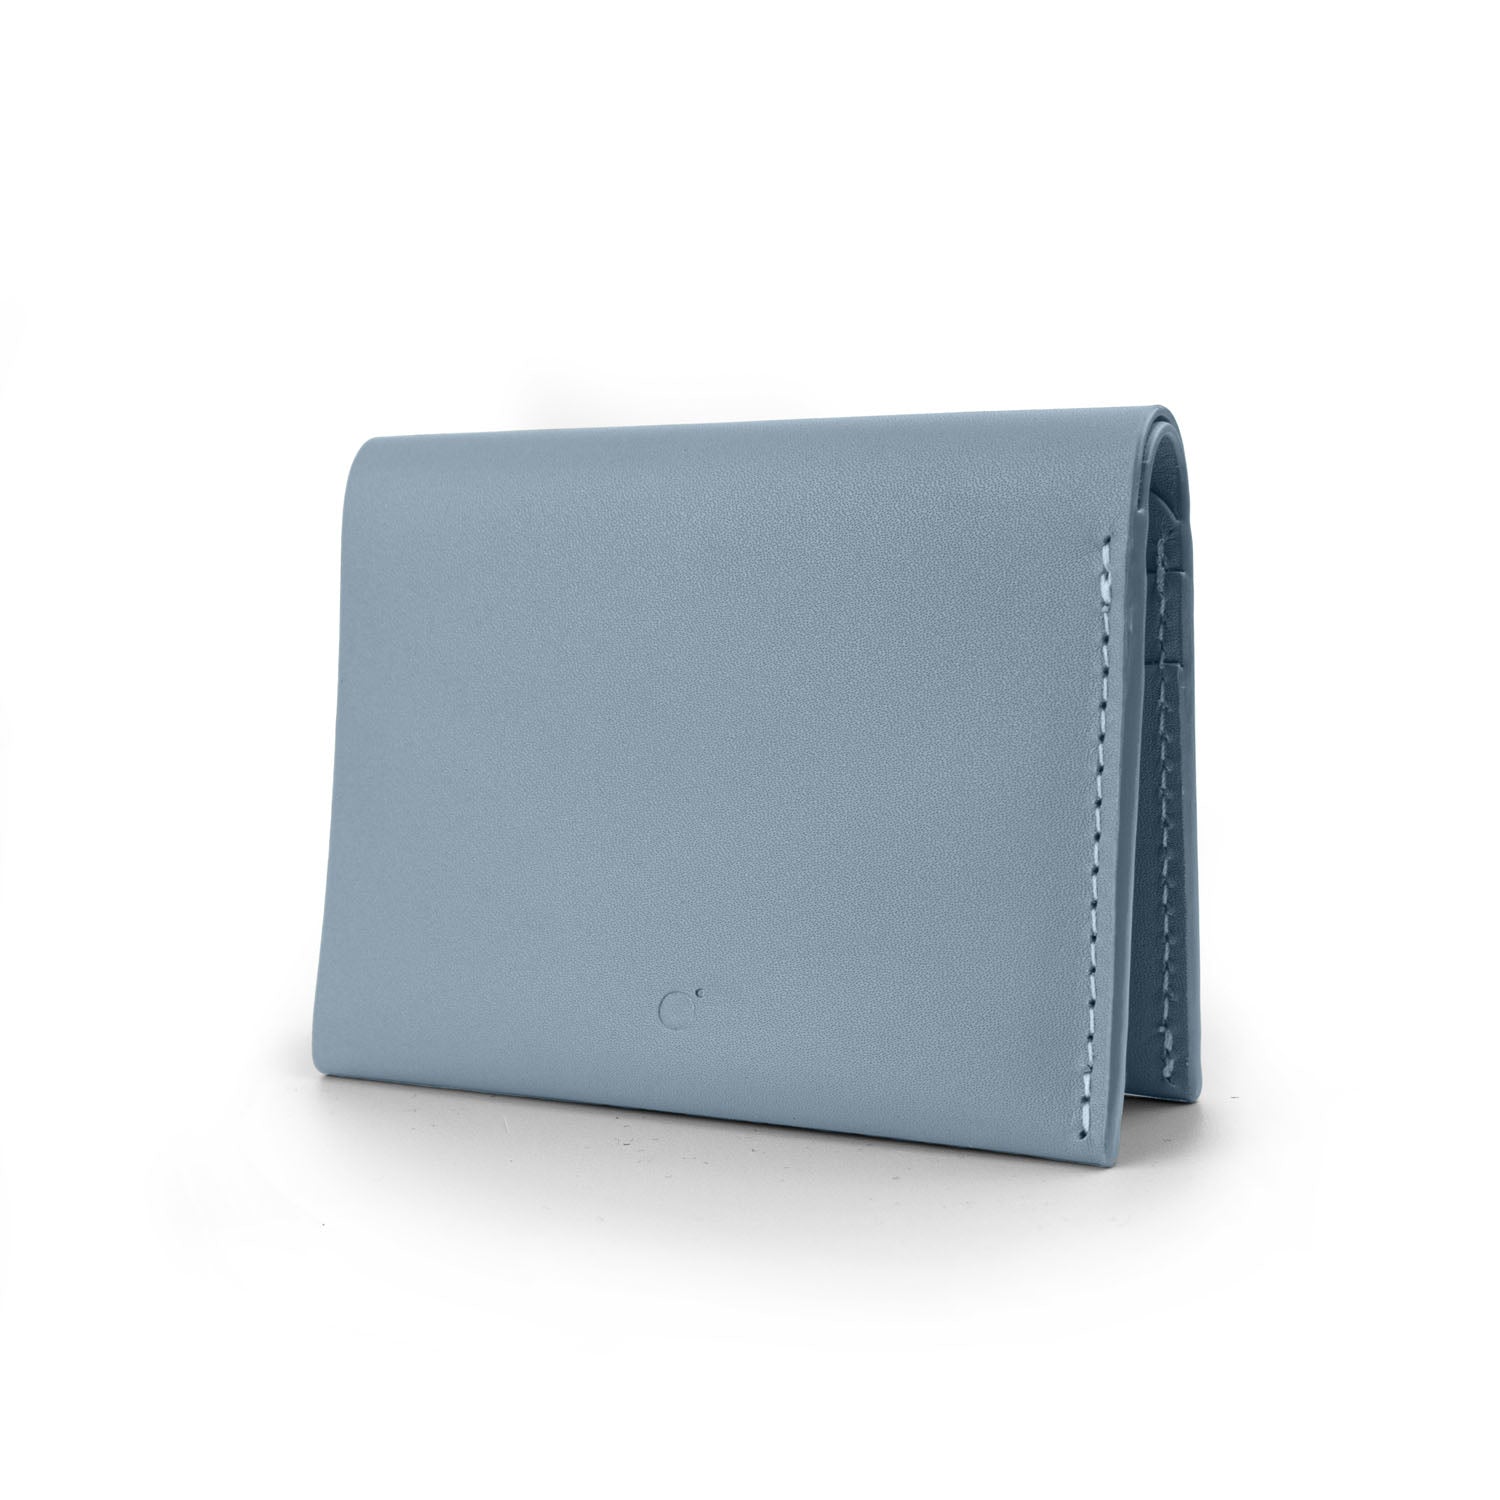 Bifold Wallet in Ice Blue